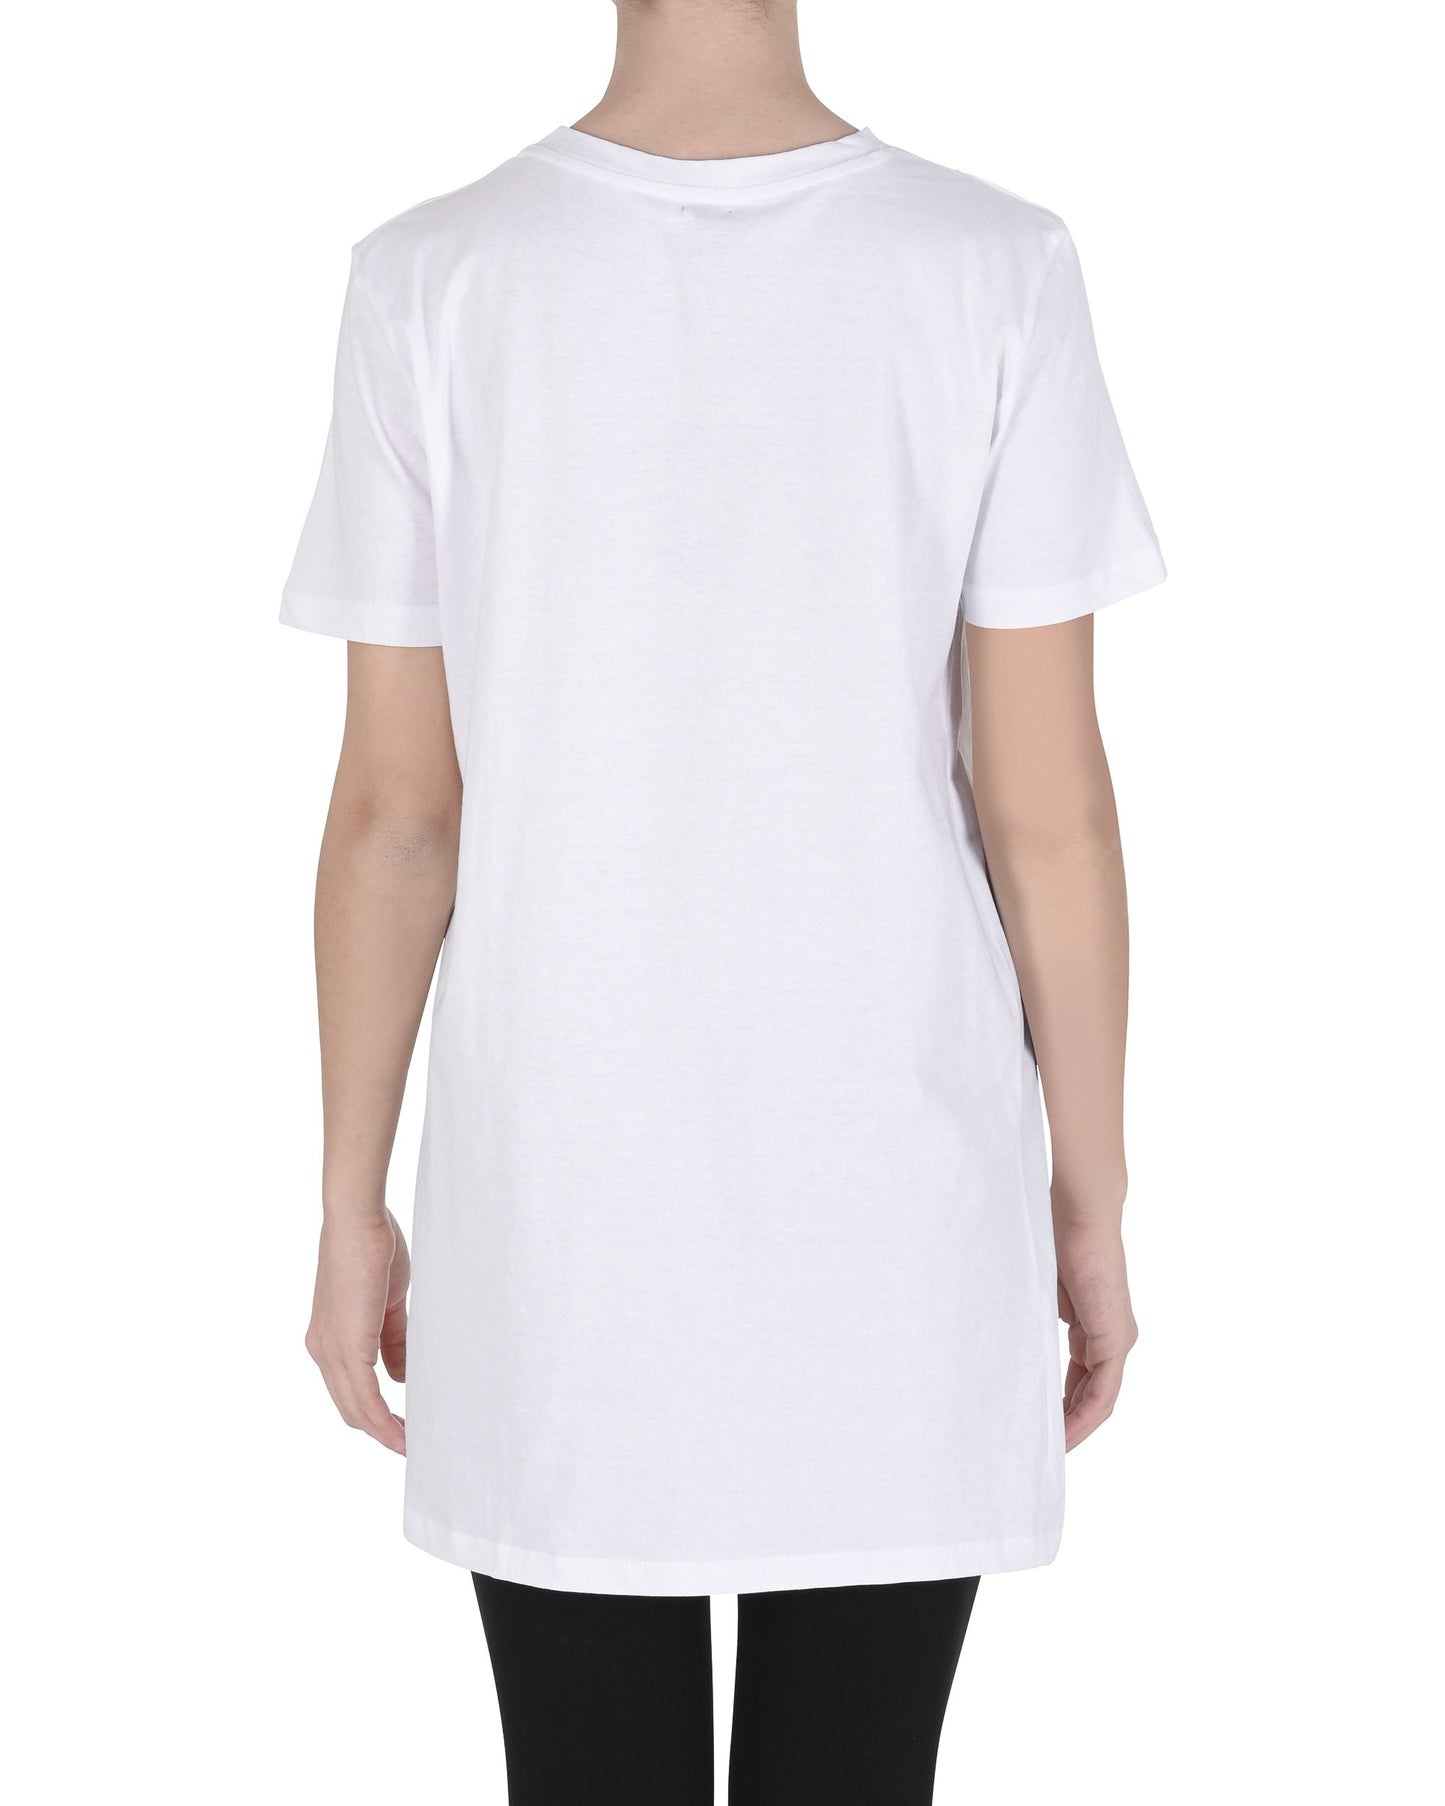 19V69 Italia Womens T-Shirt SLOTH WHITE